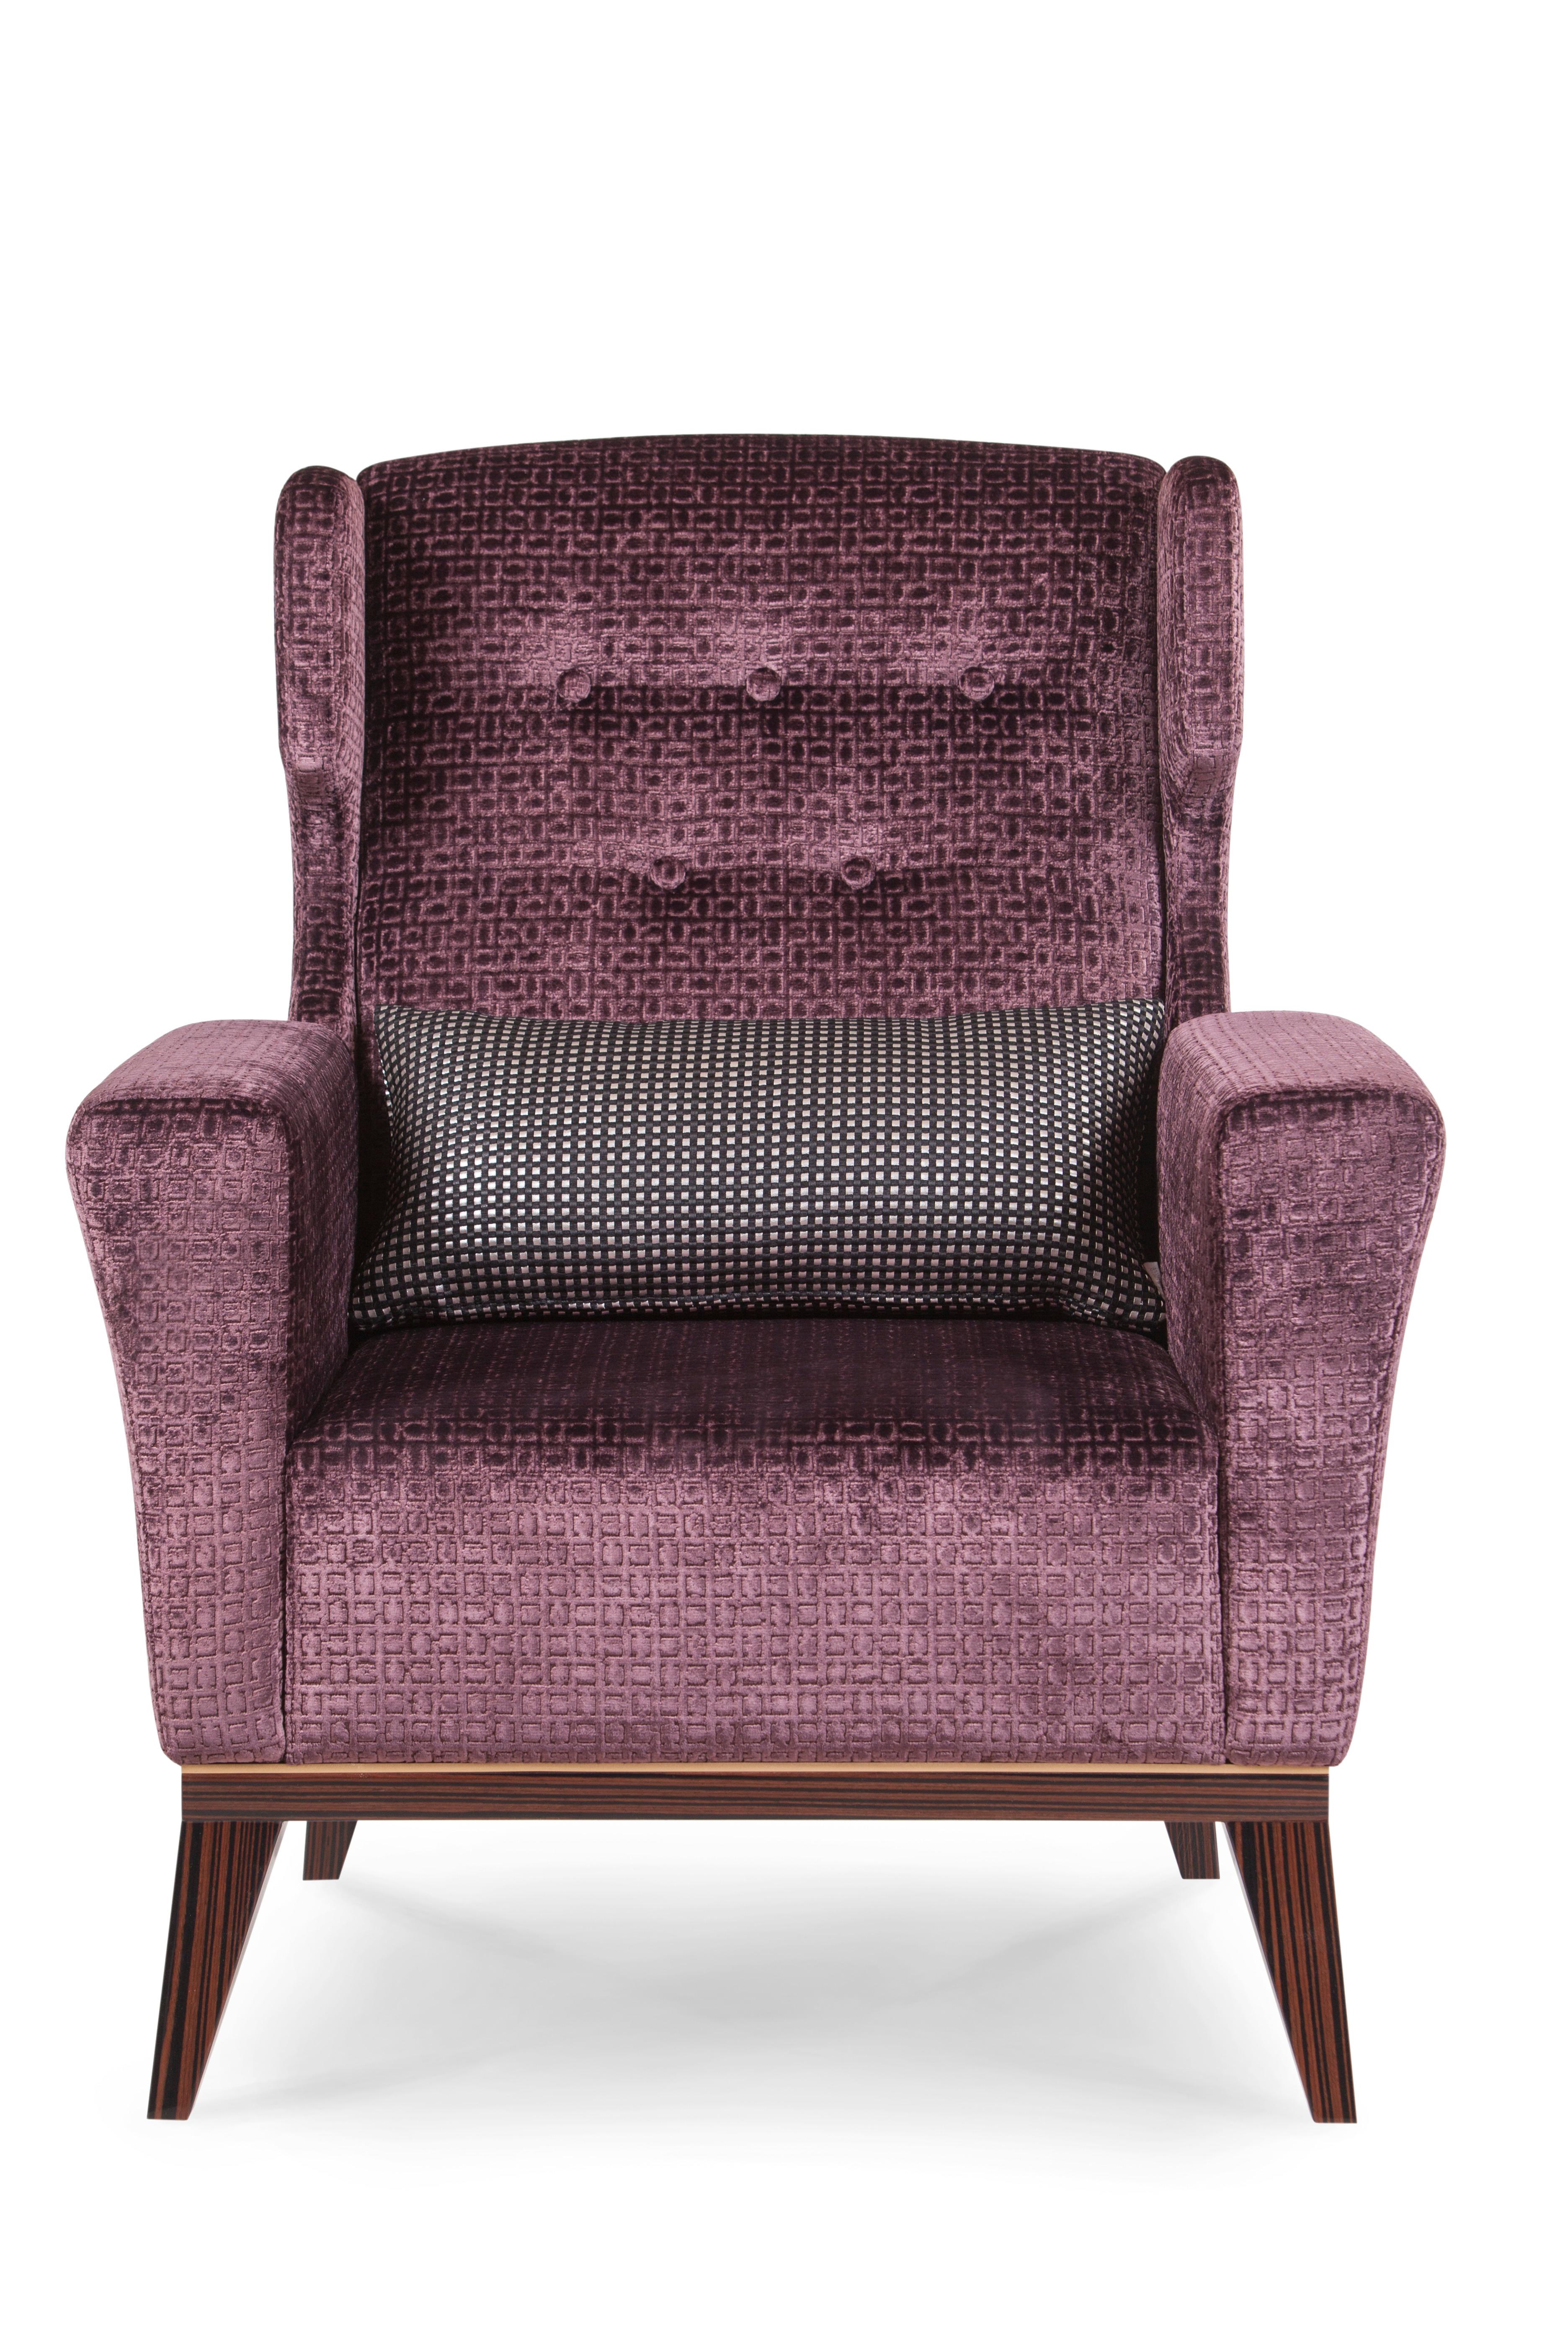 Fauteuil Genebra, Collection S, fabriqué à la main au Portugal - Europe par GF Modern.

Le fauteuil Genebra est conçu pour donner à votre salon un aspect vintage sophistiqué. Le fauteuil est revêtu de velours aubergine et laqué avec de la poudre de